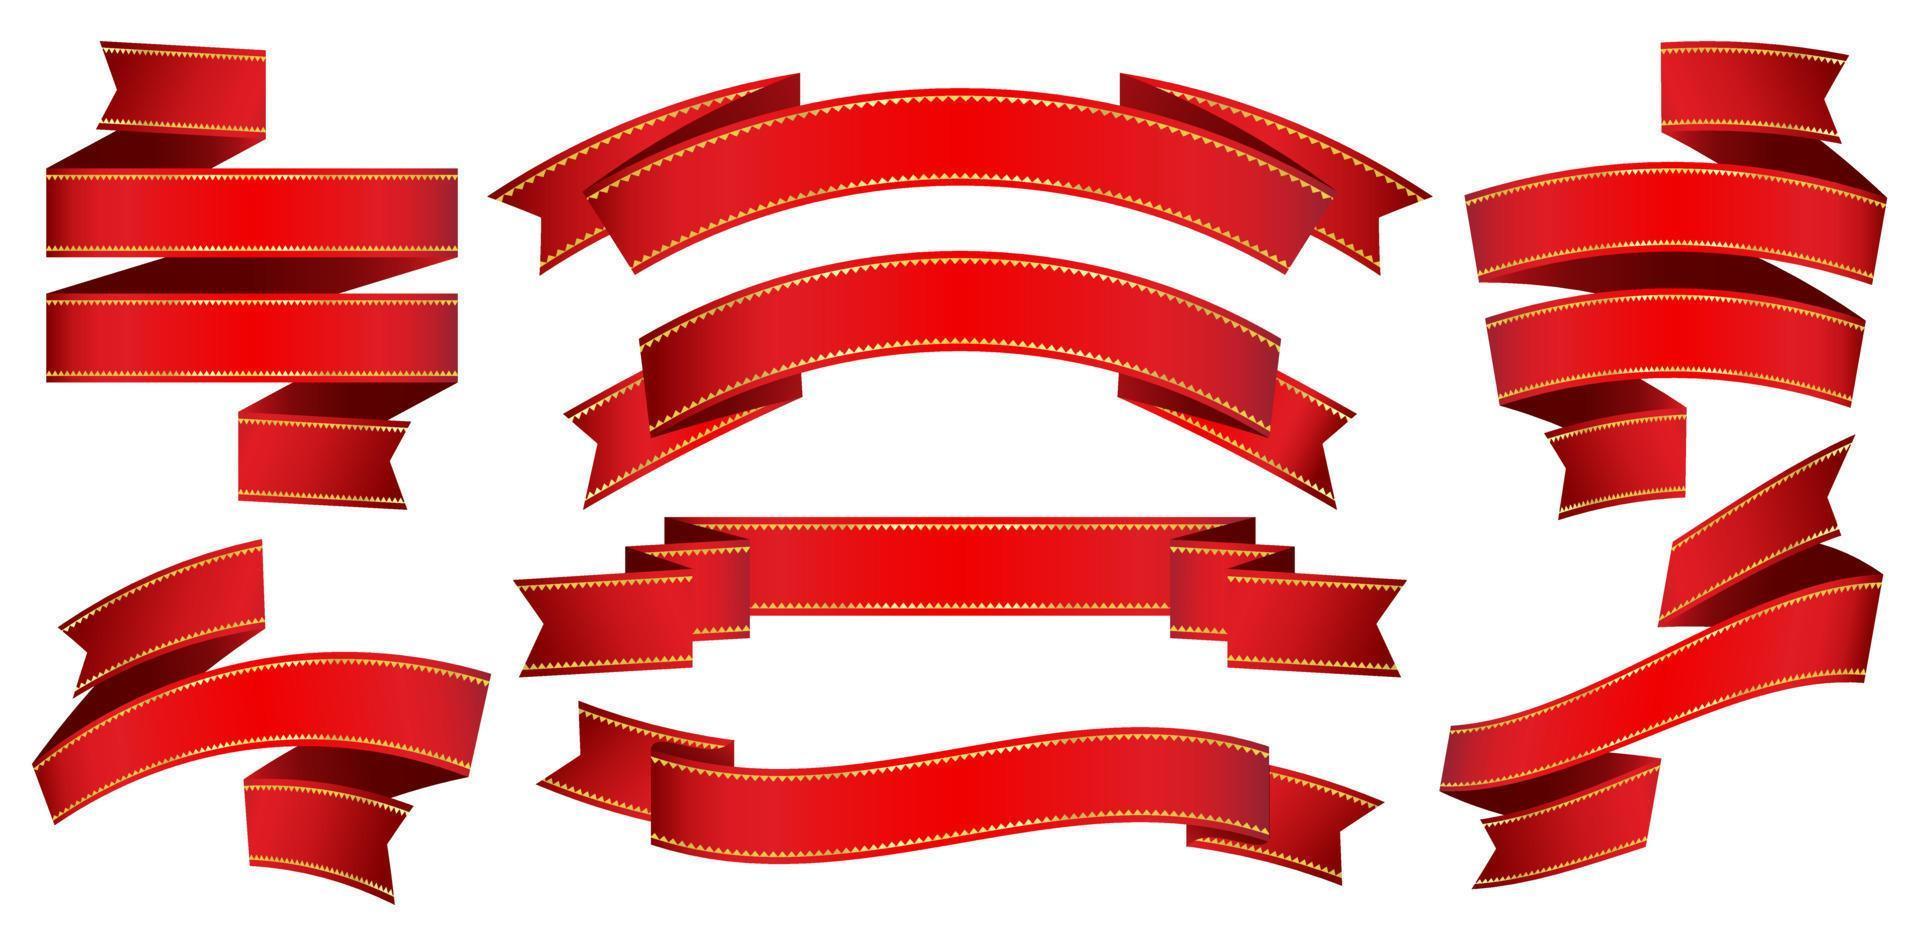 vektor illustration åtta uppsättning röd band rullning isolerat bakgrunder för däck, collage, scen mönster, användare gränssnitt, branding eller identitet kampanjer, brevpapper och skriva ut layouter, presentationer